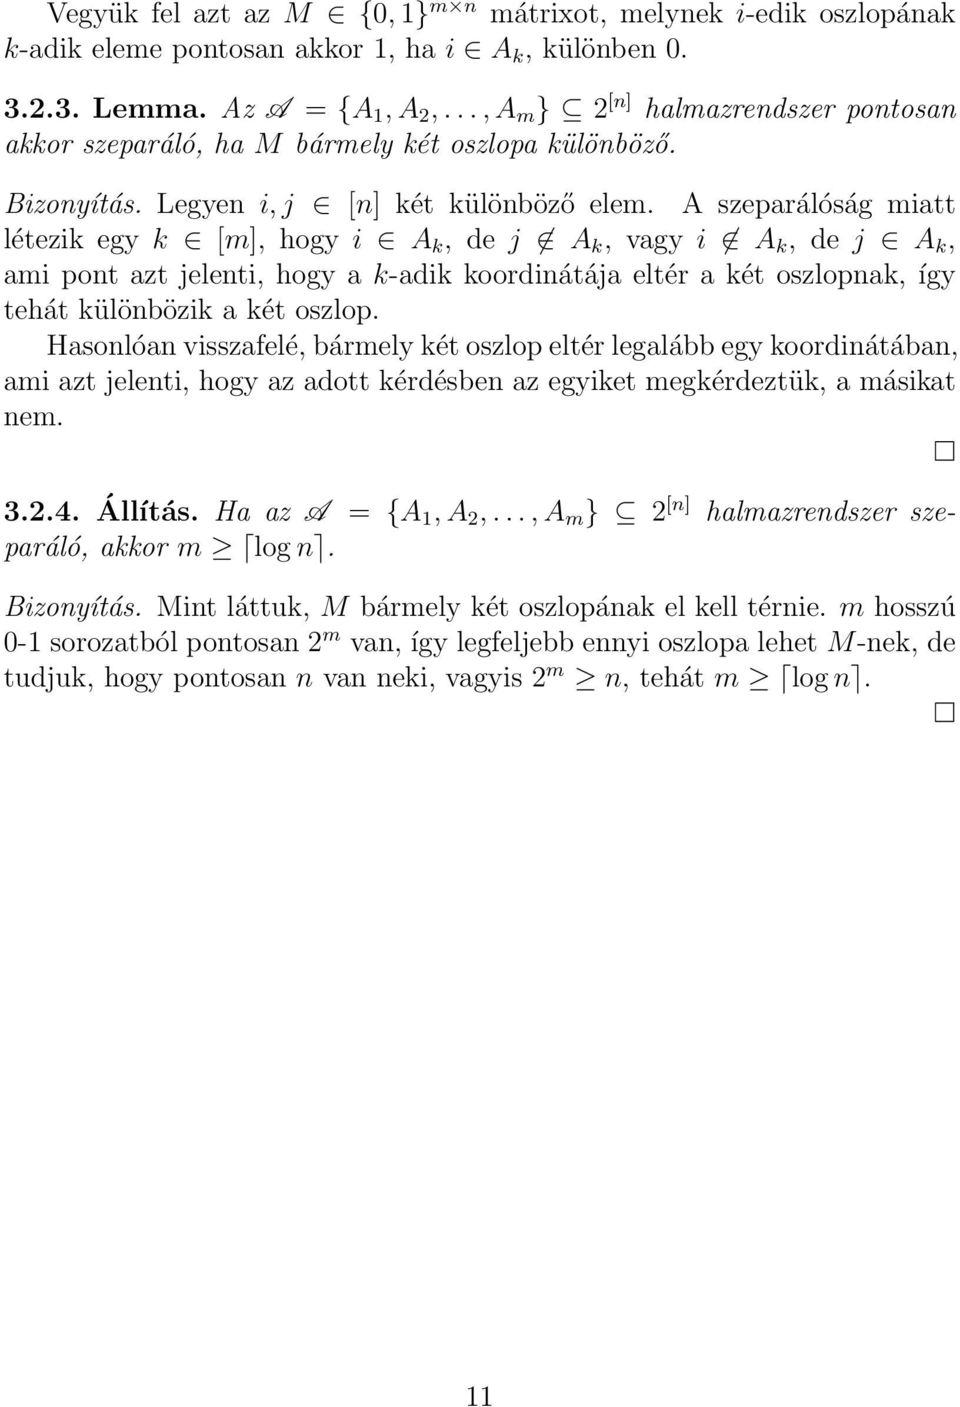 A szeparálóság miatt létezik egy k [m], hogy i A k, de j A k, vagy i A k, de j A k, ami pont azt jelenti, hogy a k-adik koordinátája eltér a két oszlopnak, így tehát különbözik a két oszlop.